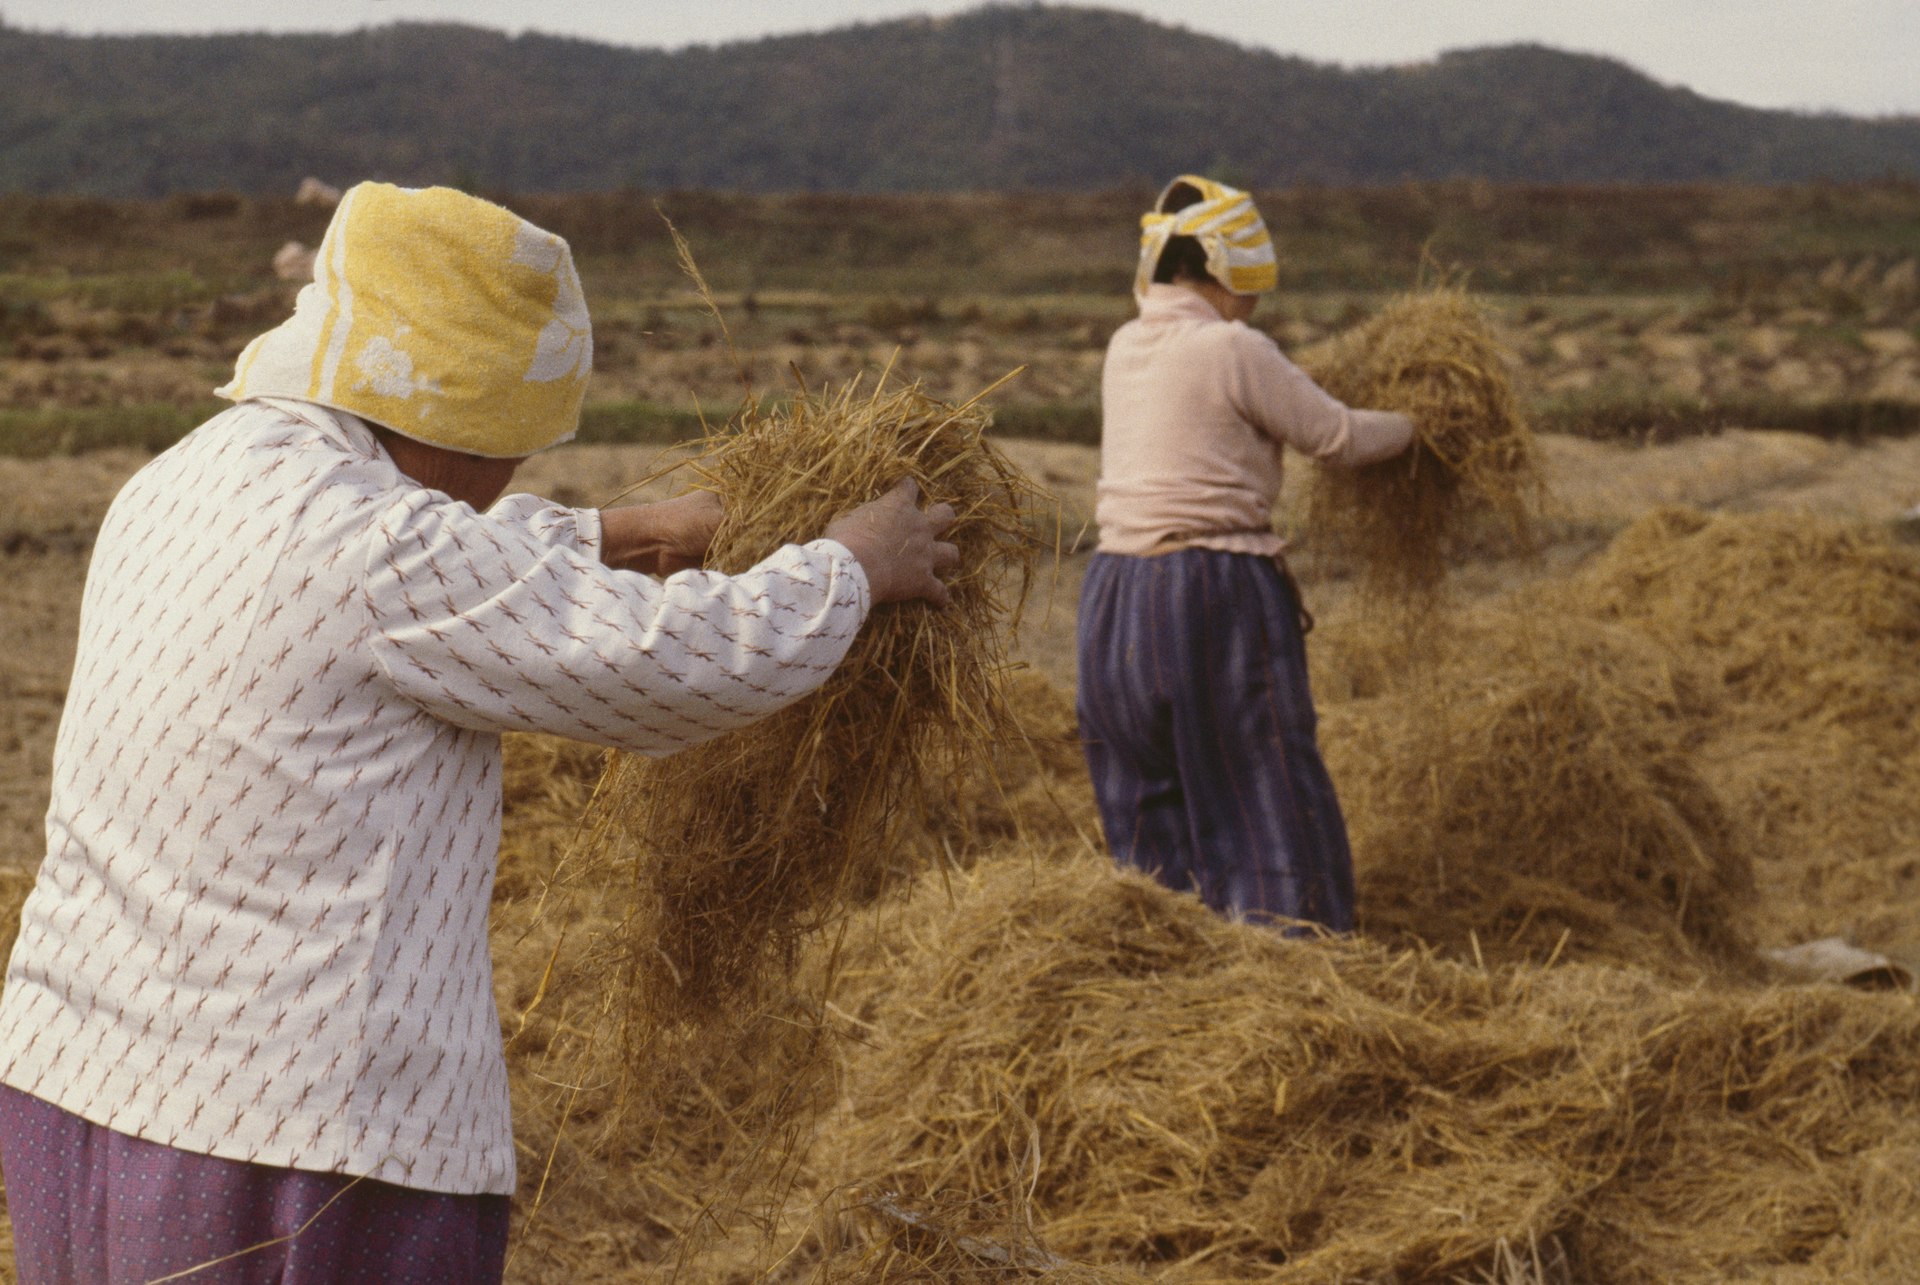 Women separate wheat in a field in rural South Korea